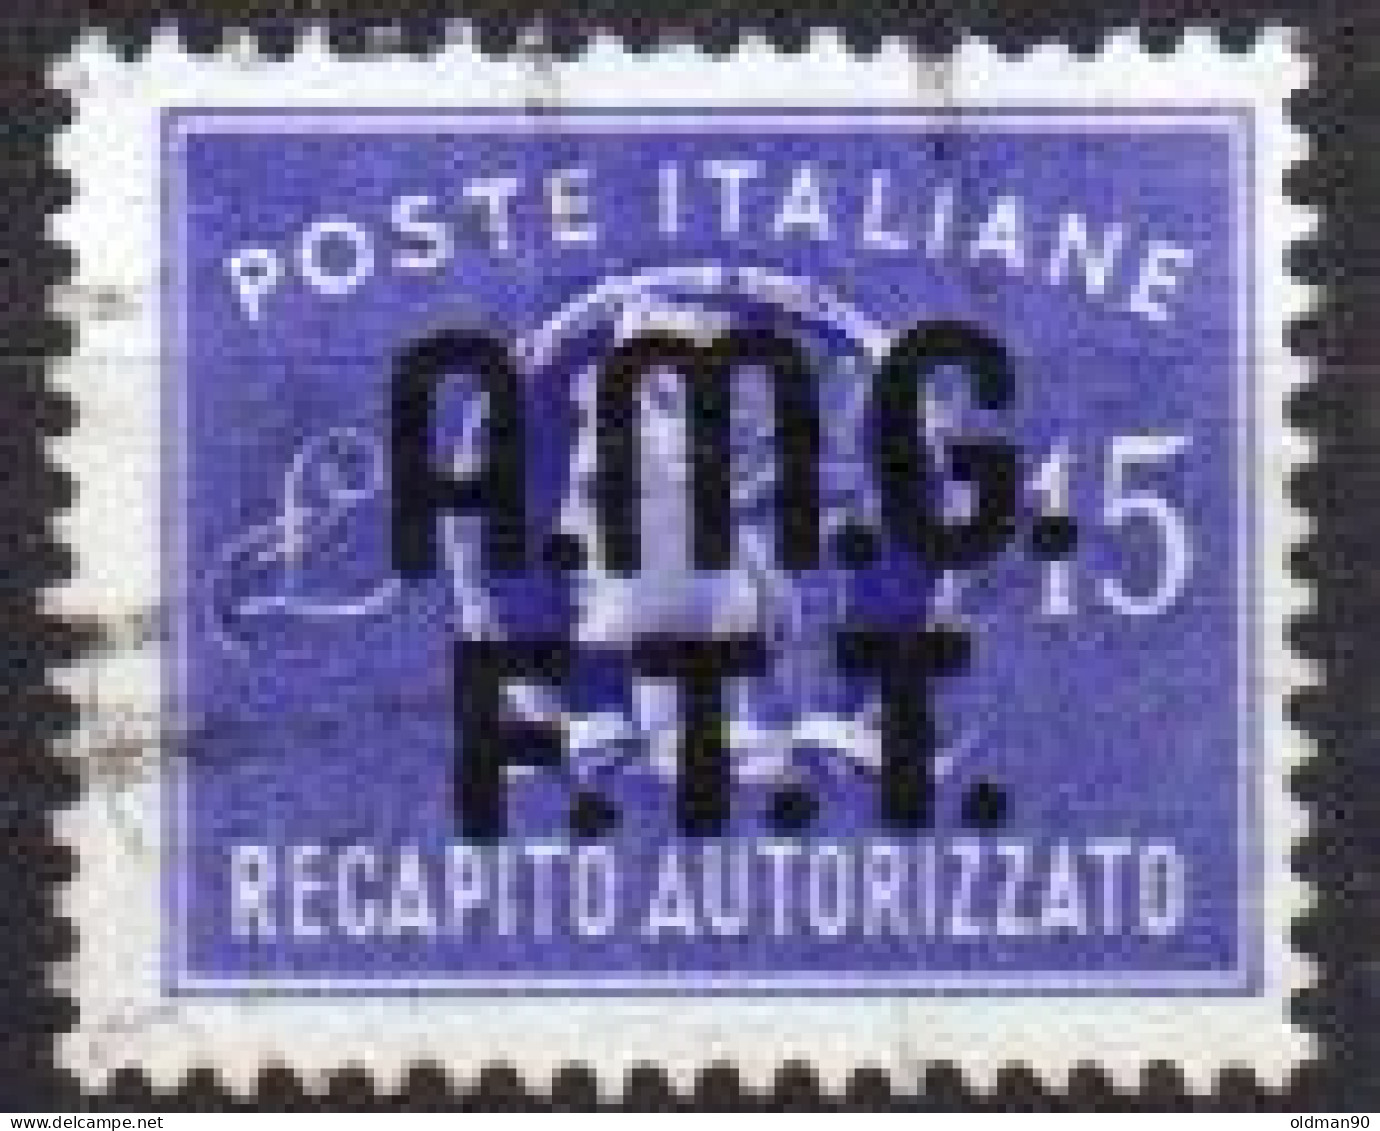 Italia-A-0742: TRIESTE - Zona A - R. A. 1949 (o) Used - Uno Solo - Qualità A Vostra Opiniove.. - Afgestempeld